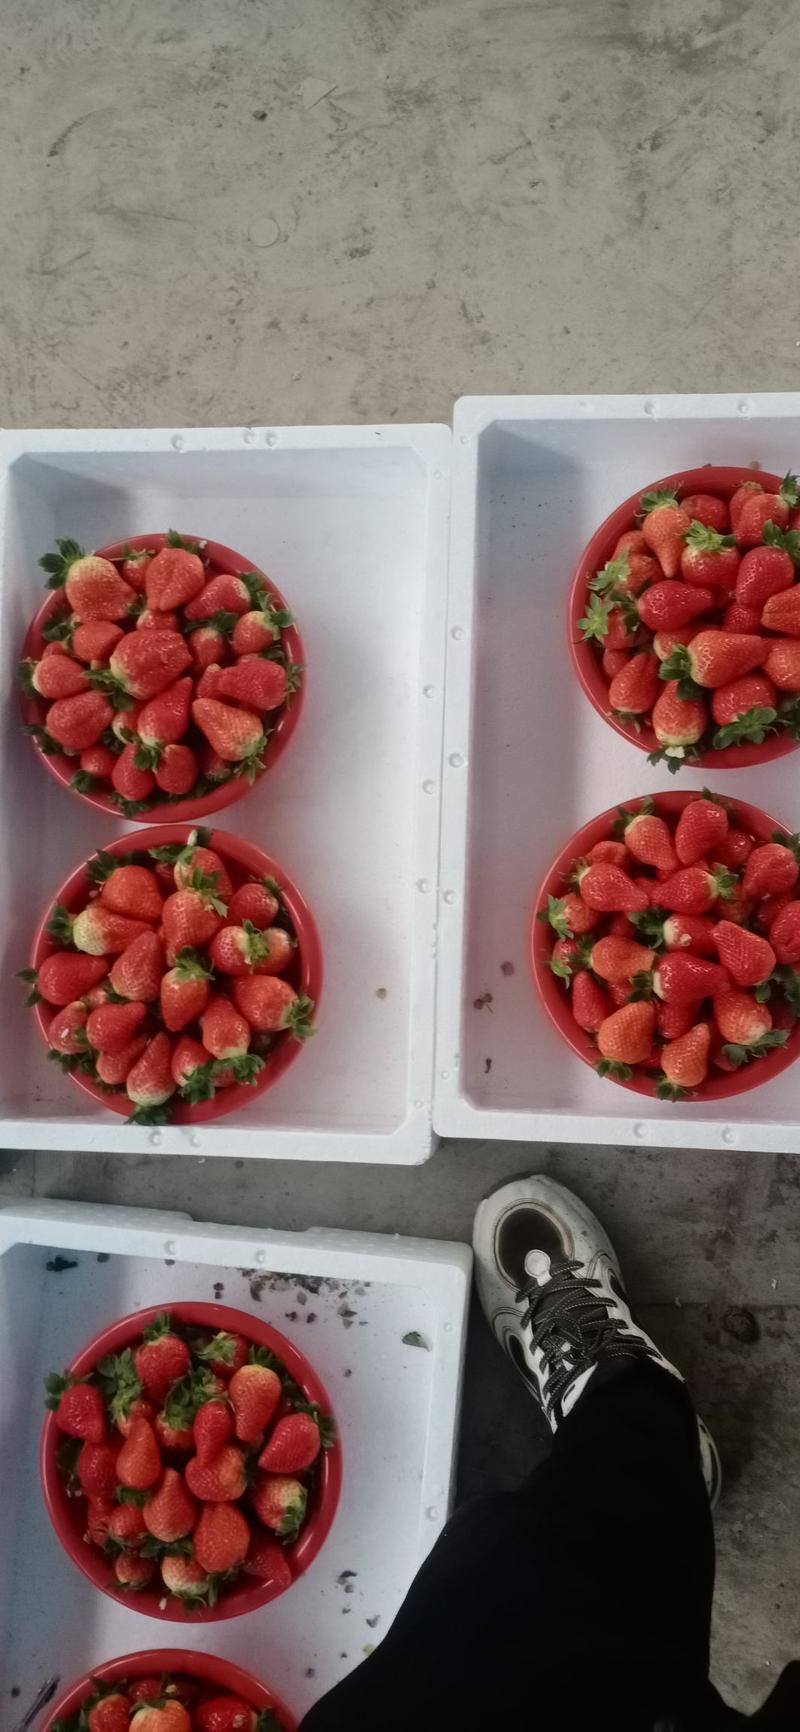 甜茶理草莓，果个头大，形状鸡心形，亮度高耐运输，口味酸甜